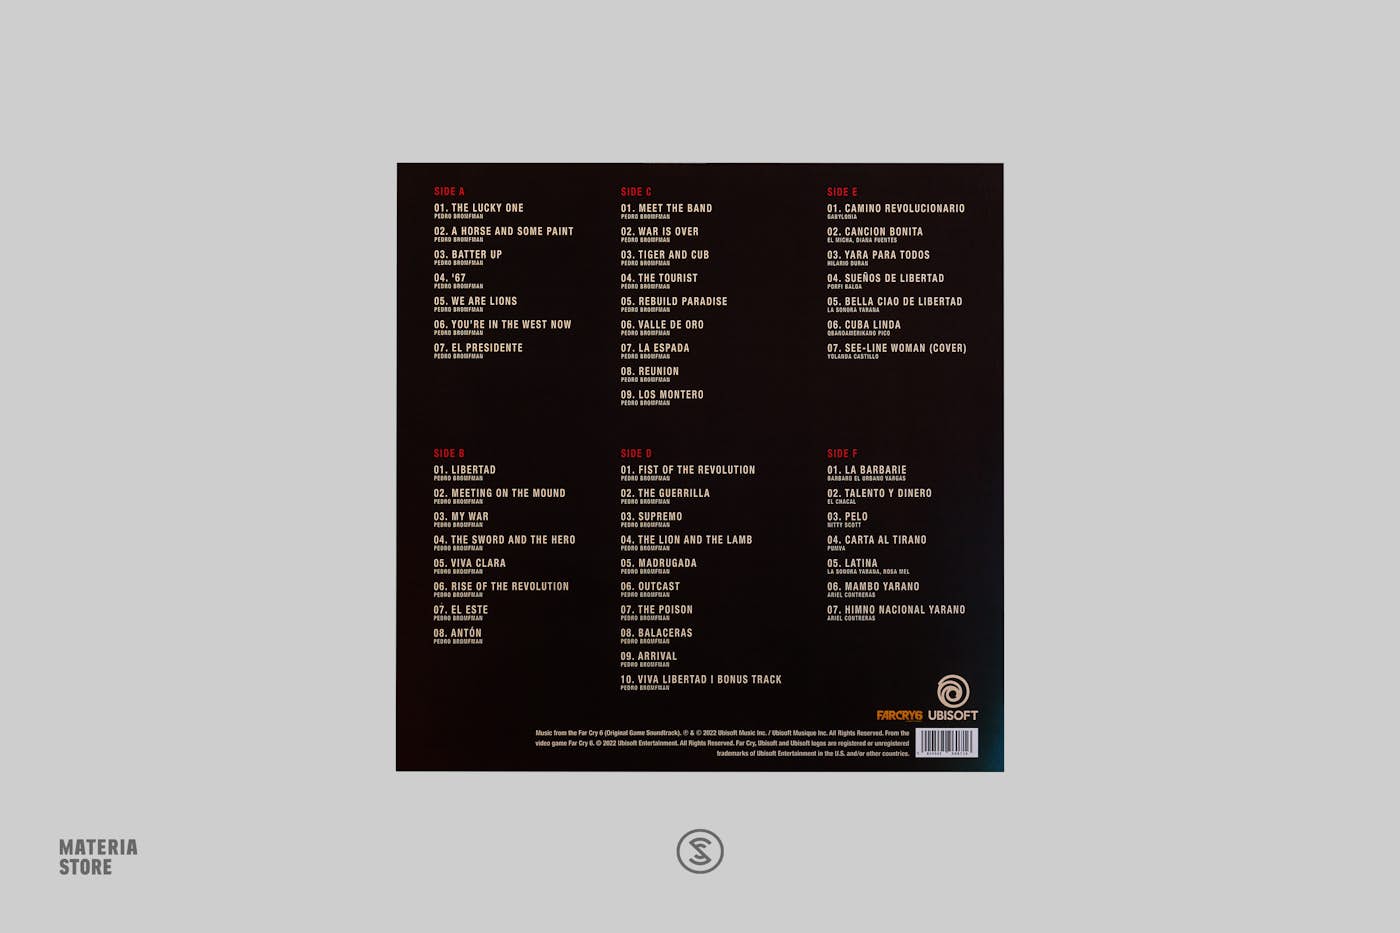 The Sandman: Soundtrack (2LP Gold Vinyl) – Rue Morgue Records